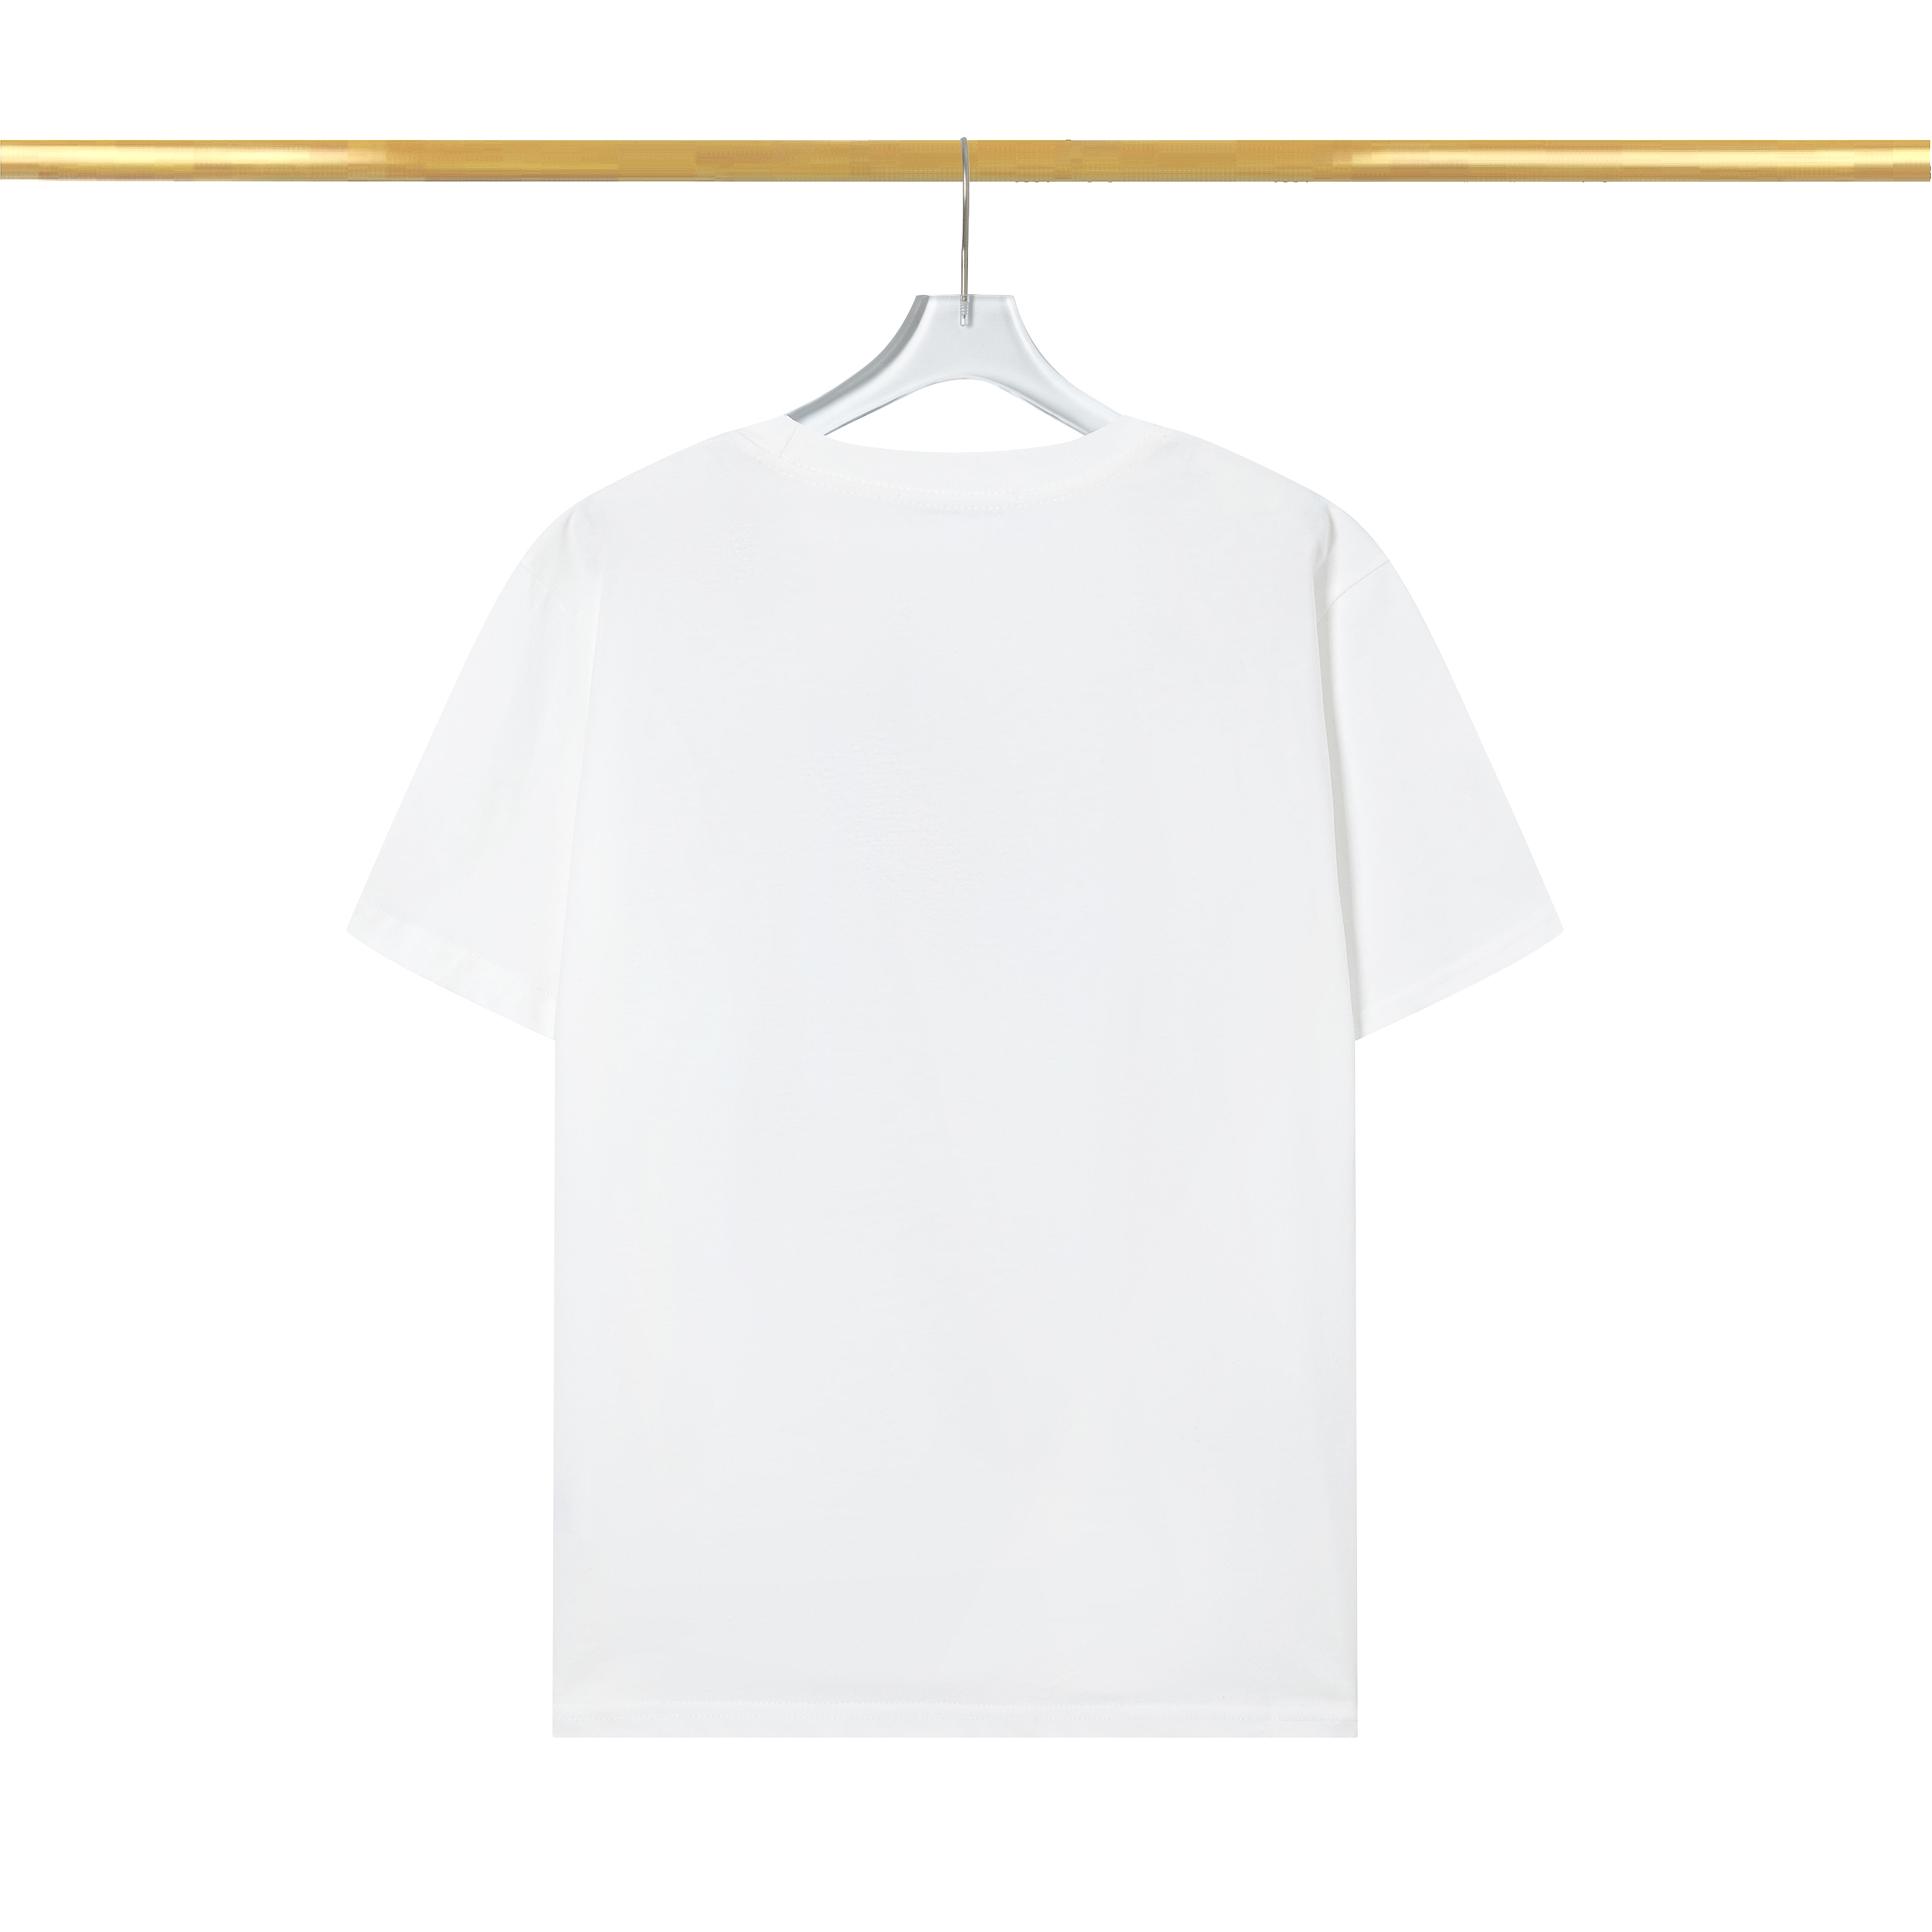 Baumwoll-Männer werden All-Match-neues schwarz-weißes gedrucktes Buchstaben-Sommer-beiläufiges loses kurzes Hülsen-neues bestes Farb-T-Shirt sein